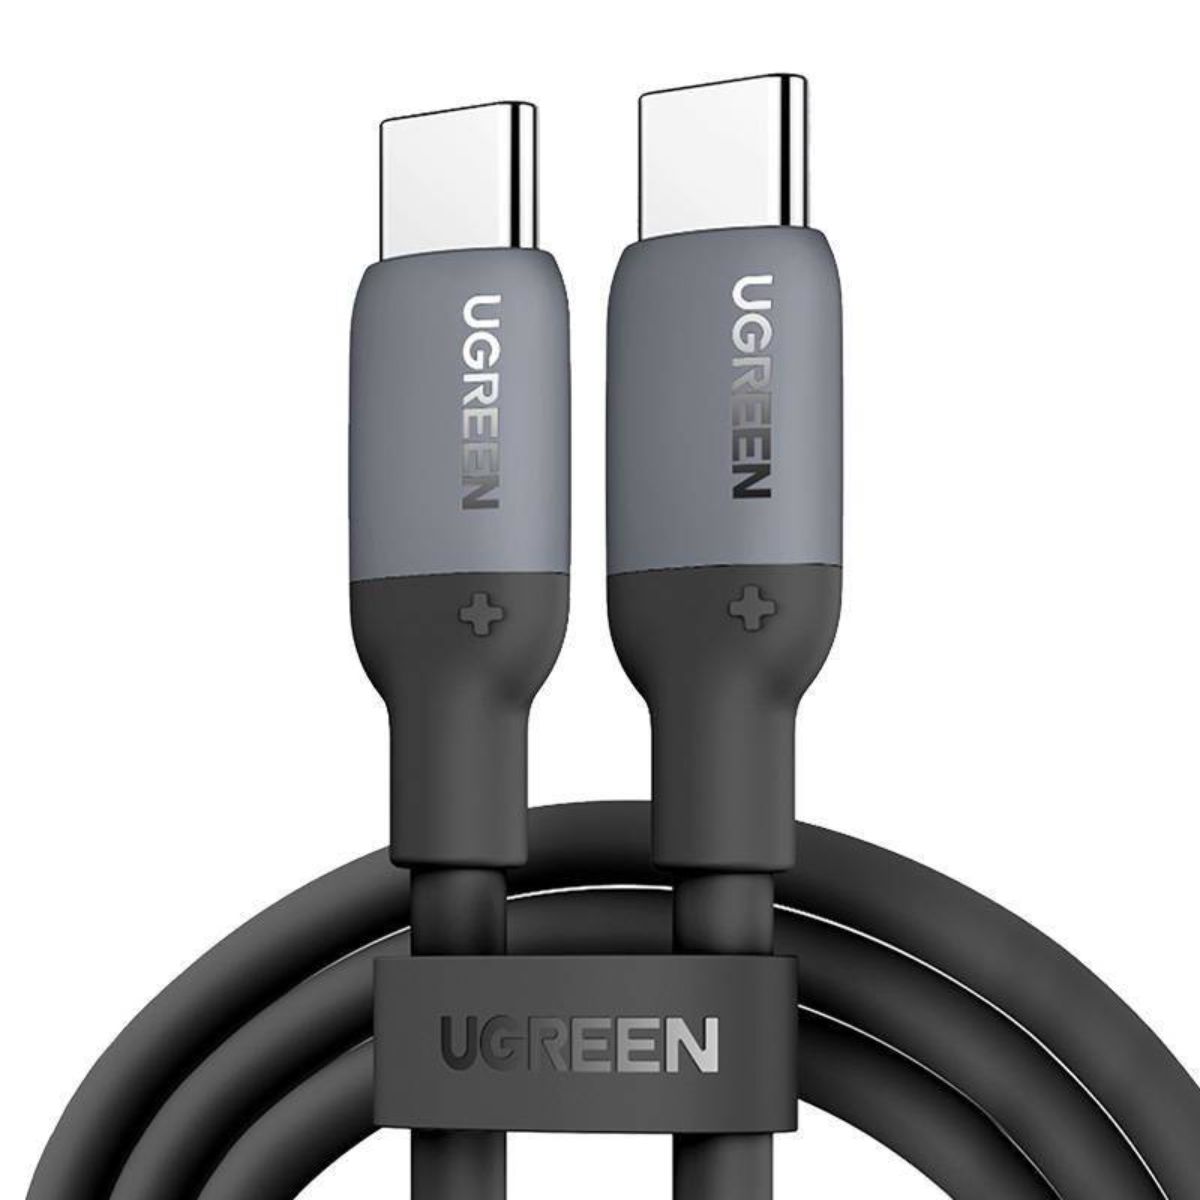 Cáp sạc dài 50cm silicone USB-C đến USB-C Ugreen US563, 15282 màu đen, hỗ trợ sạc nhanh, tốc độ truyền dữ liệu 480Mbps